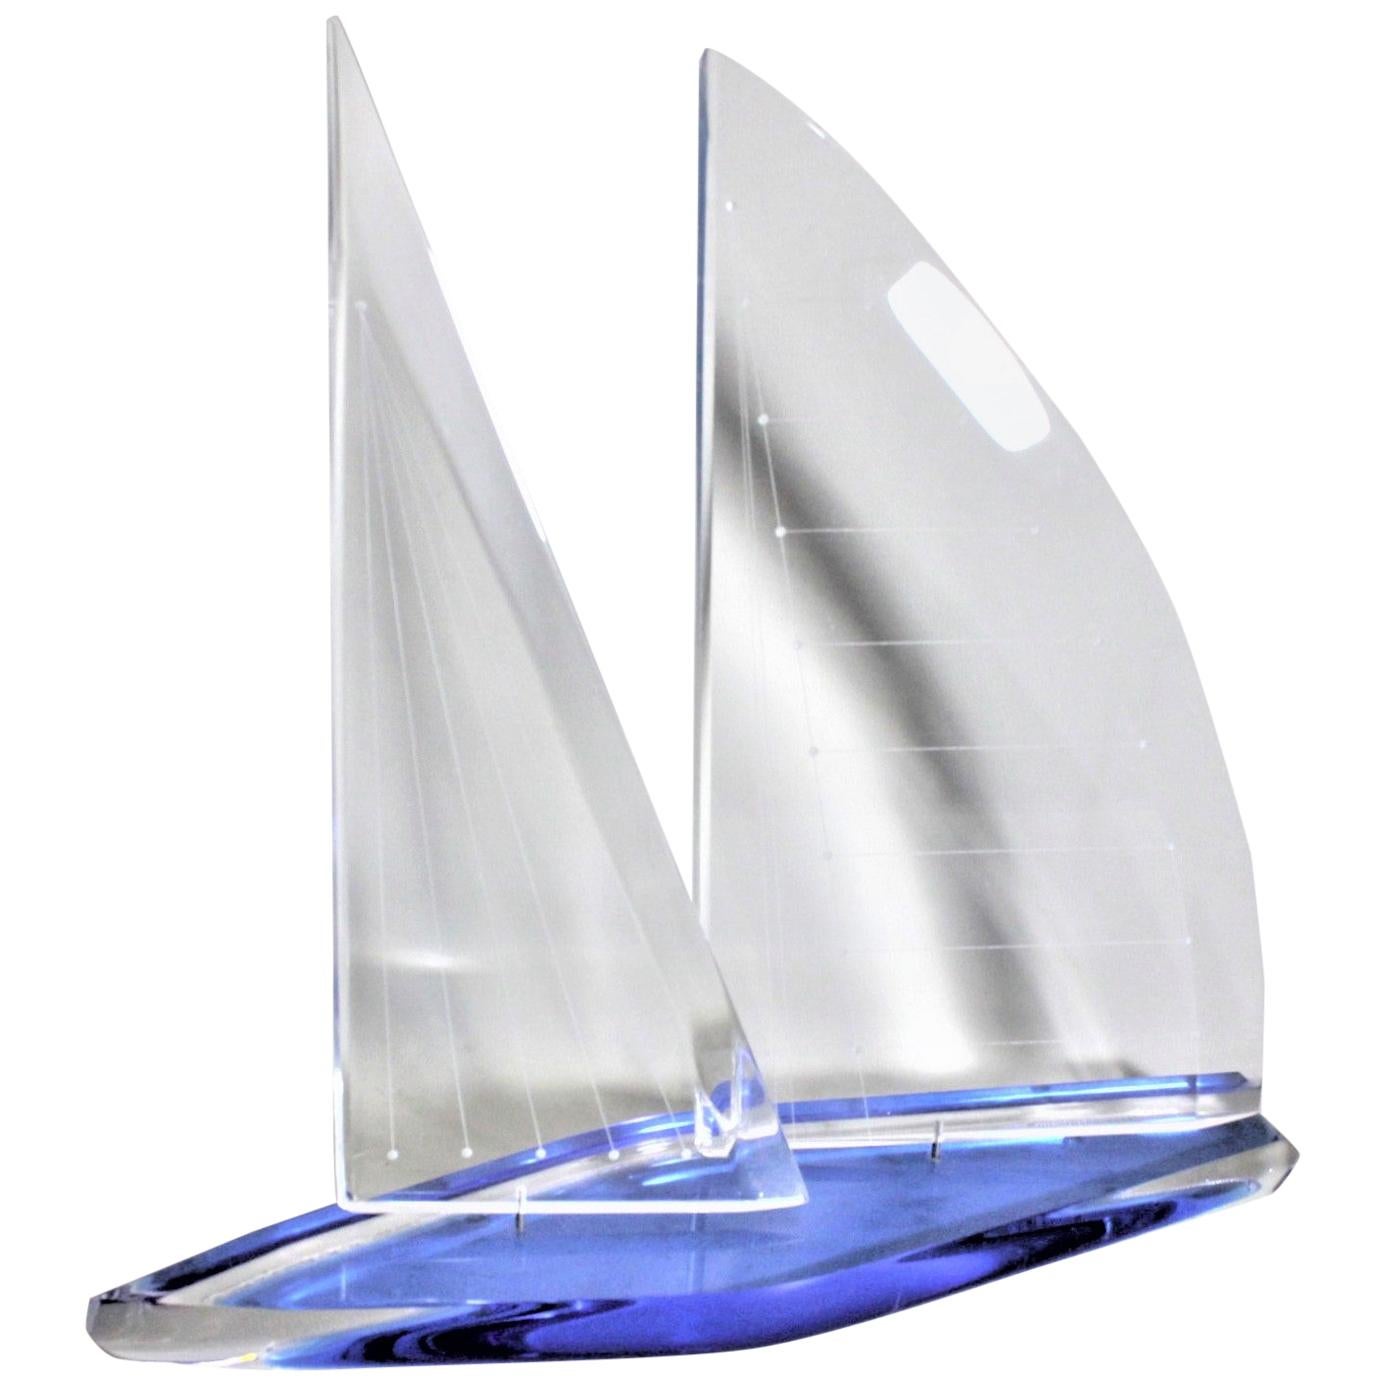 Sculpture de voilier de course en lucite bleue et transparente vintage de Wintrade, Beverly Hills